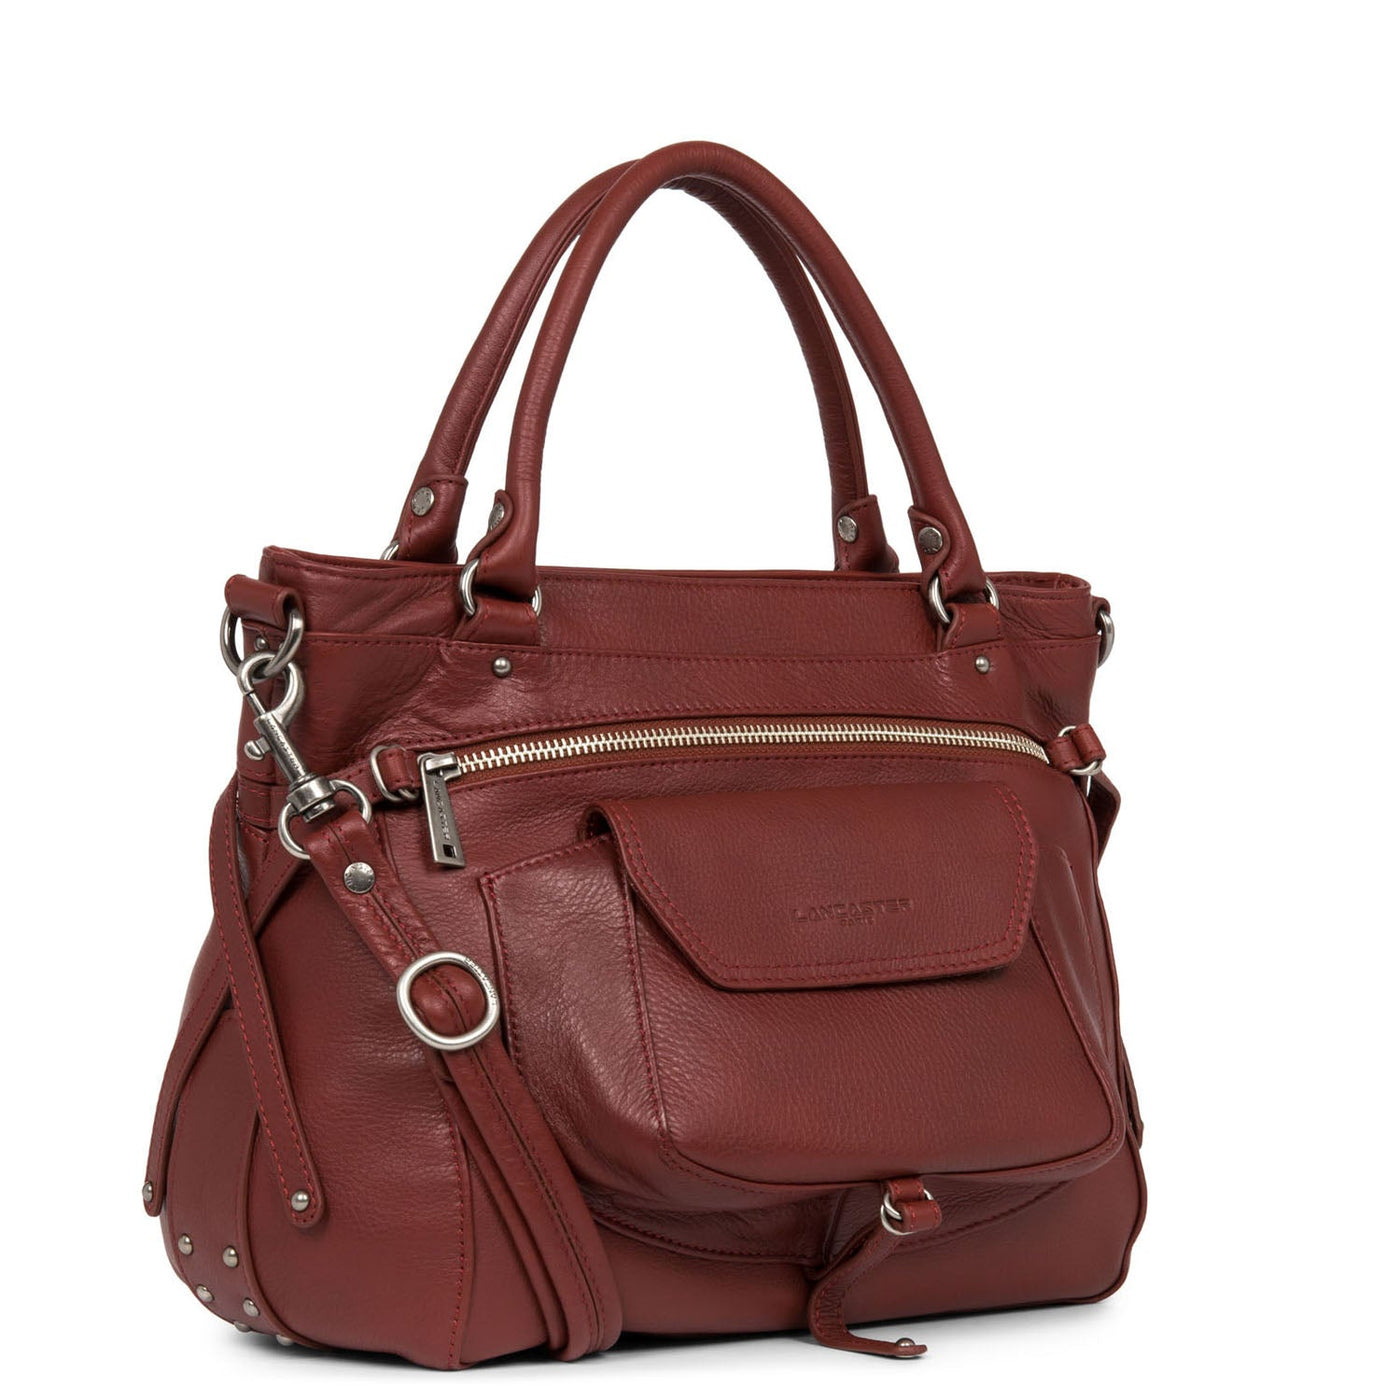 m handbag - soft vintage nova #couleur_bordeaux